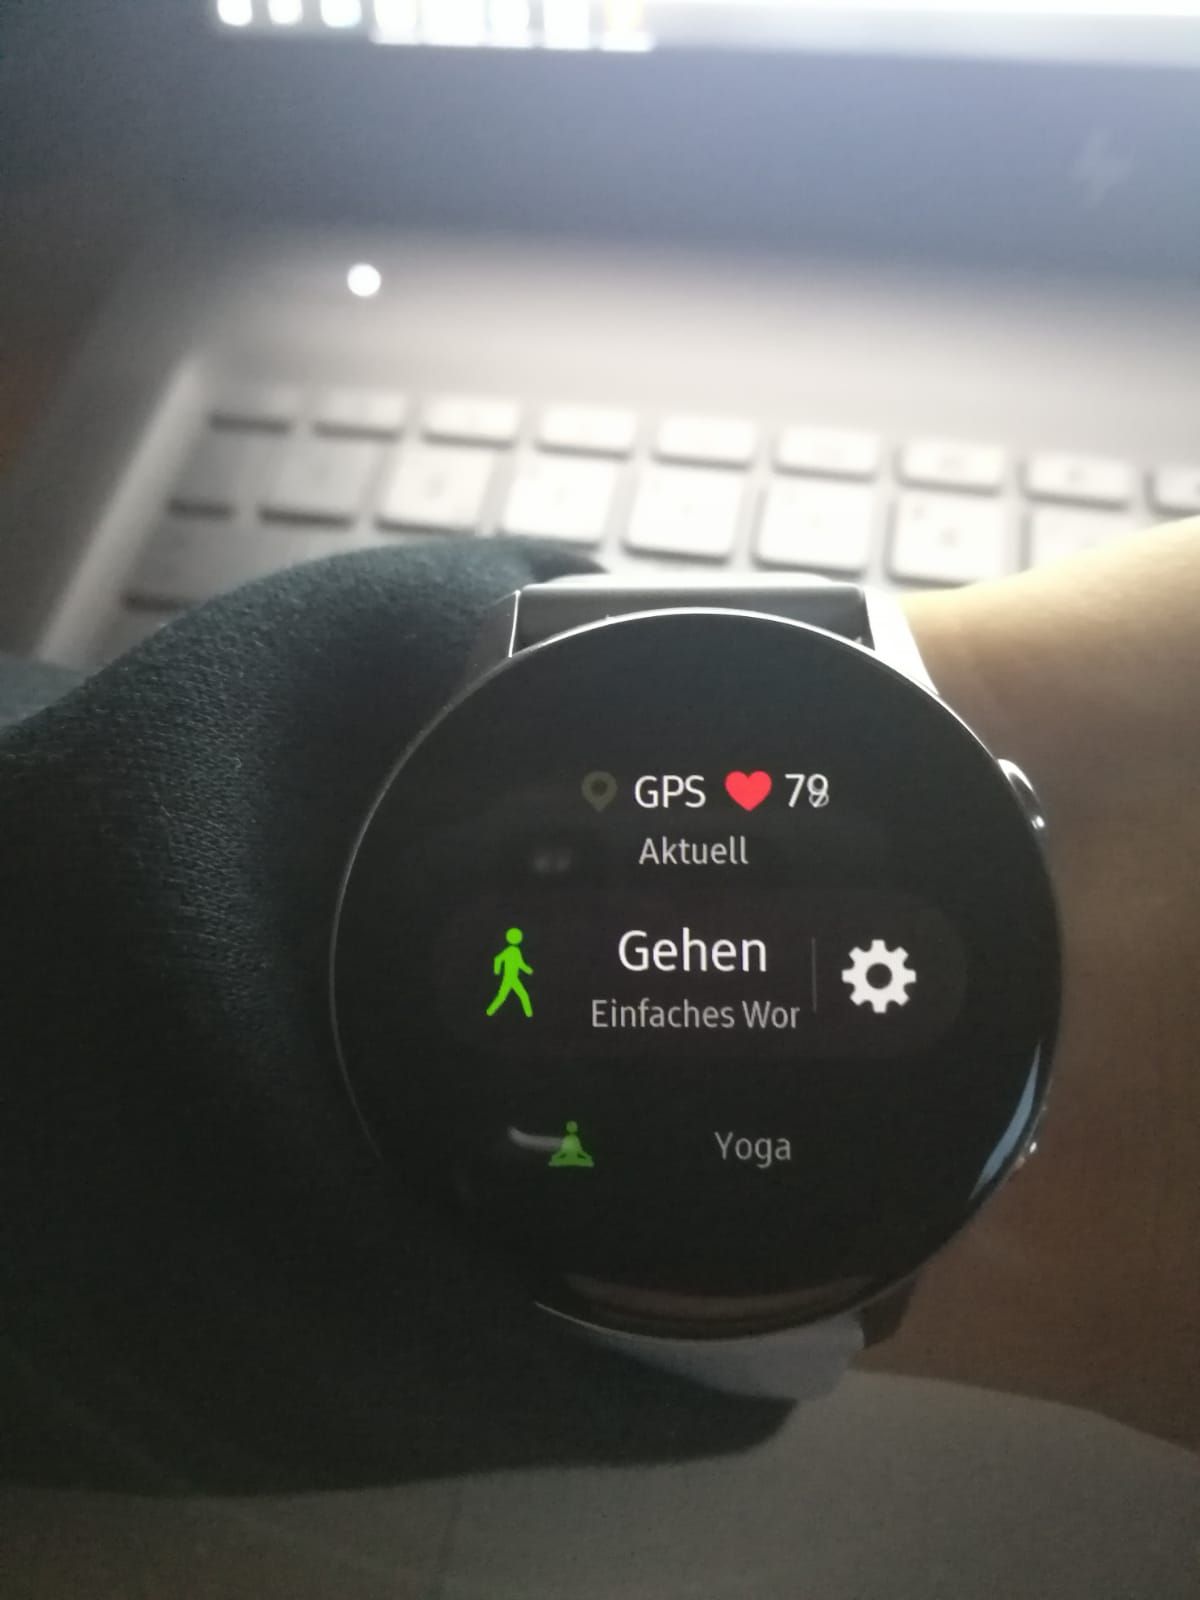 Samsung Galaxy Watch Active: GPS-Tracking funktioniert nicht - Samsung  Community